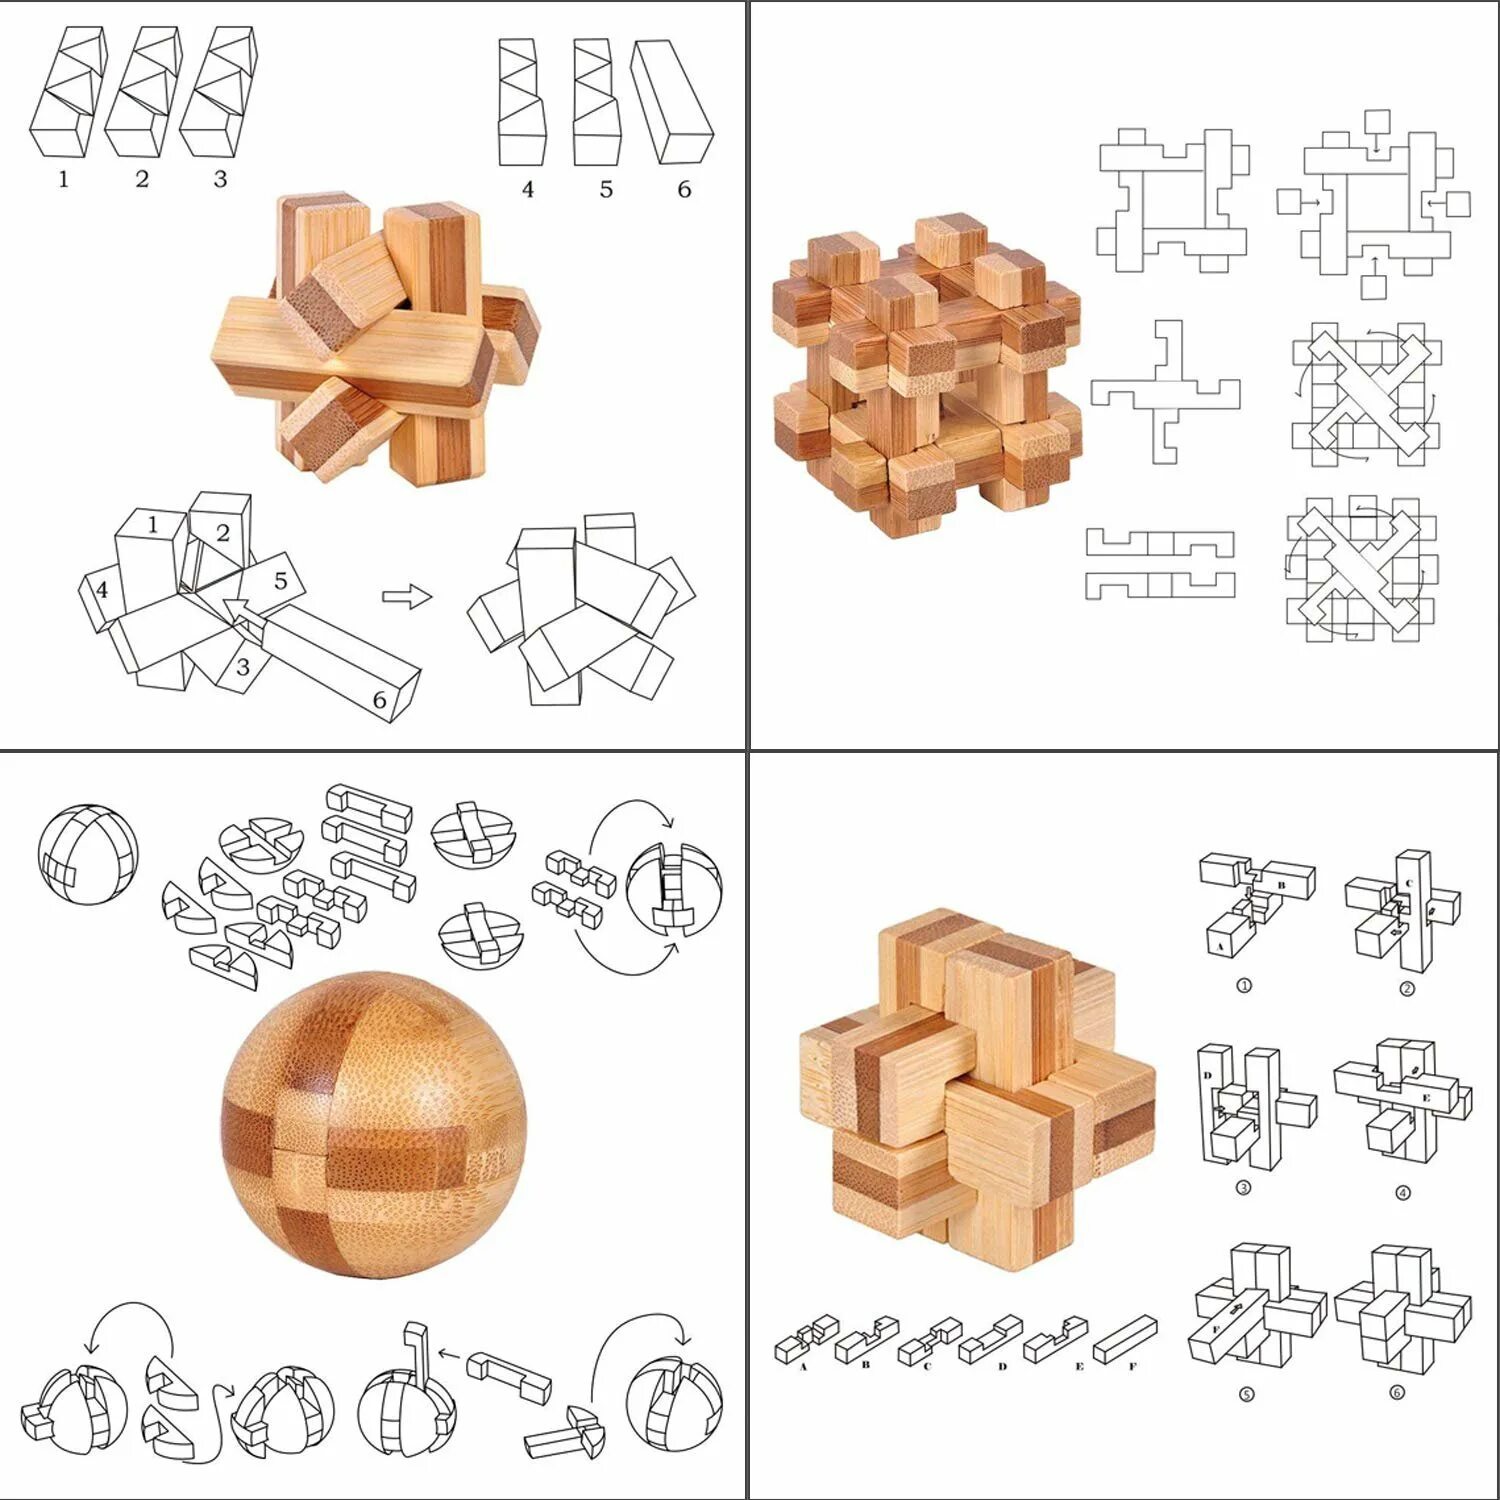 Деревянная головоломка куб 6 деталей. Деревянная головоломка куб Дюбуа. Китайские головоломки из дерева. Деревянные головоломки сборка. Головоломка сама